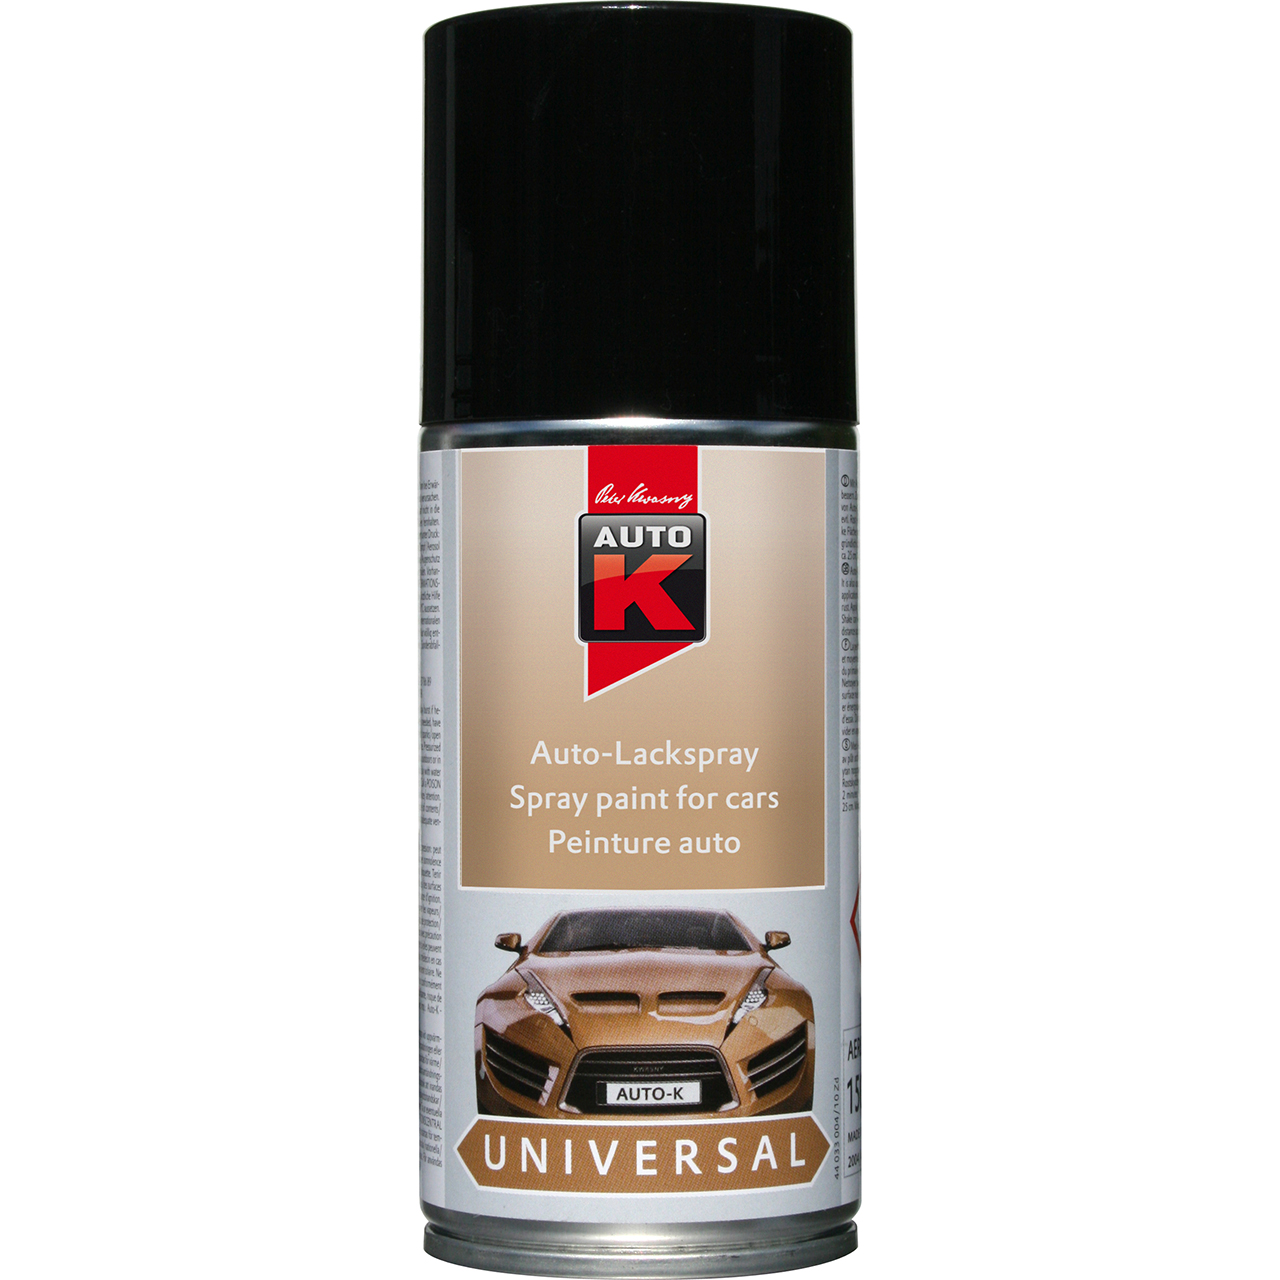 Auto-K Universal Auto-Lackspray schwarz glanz 150ml